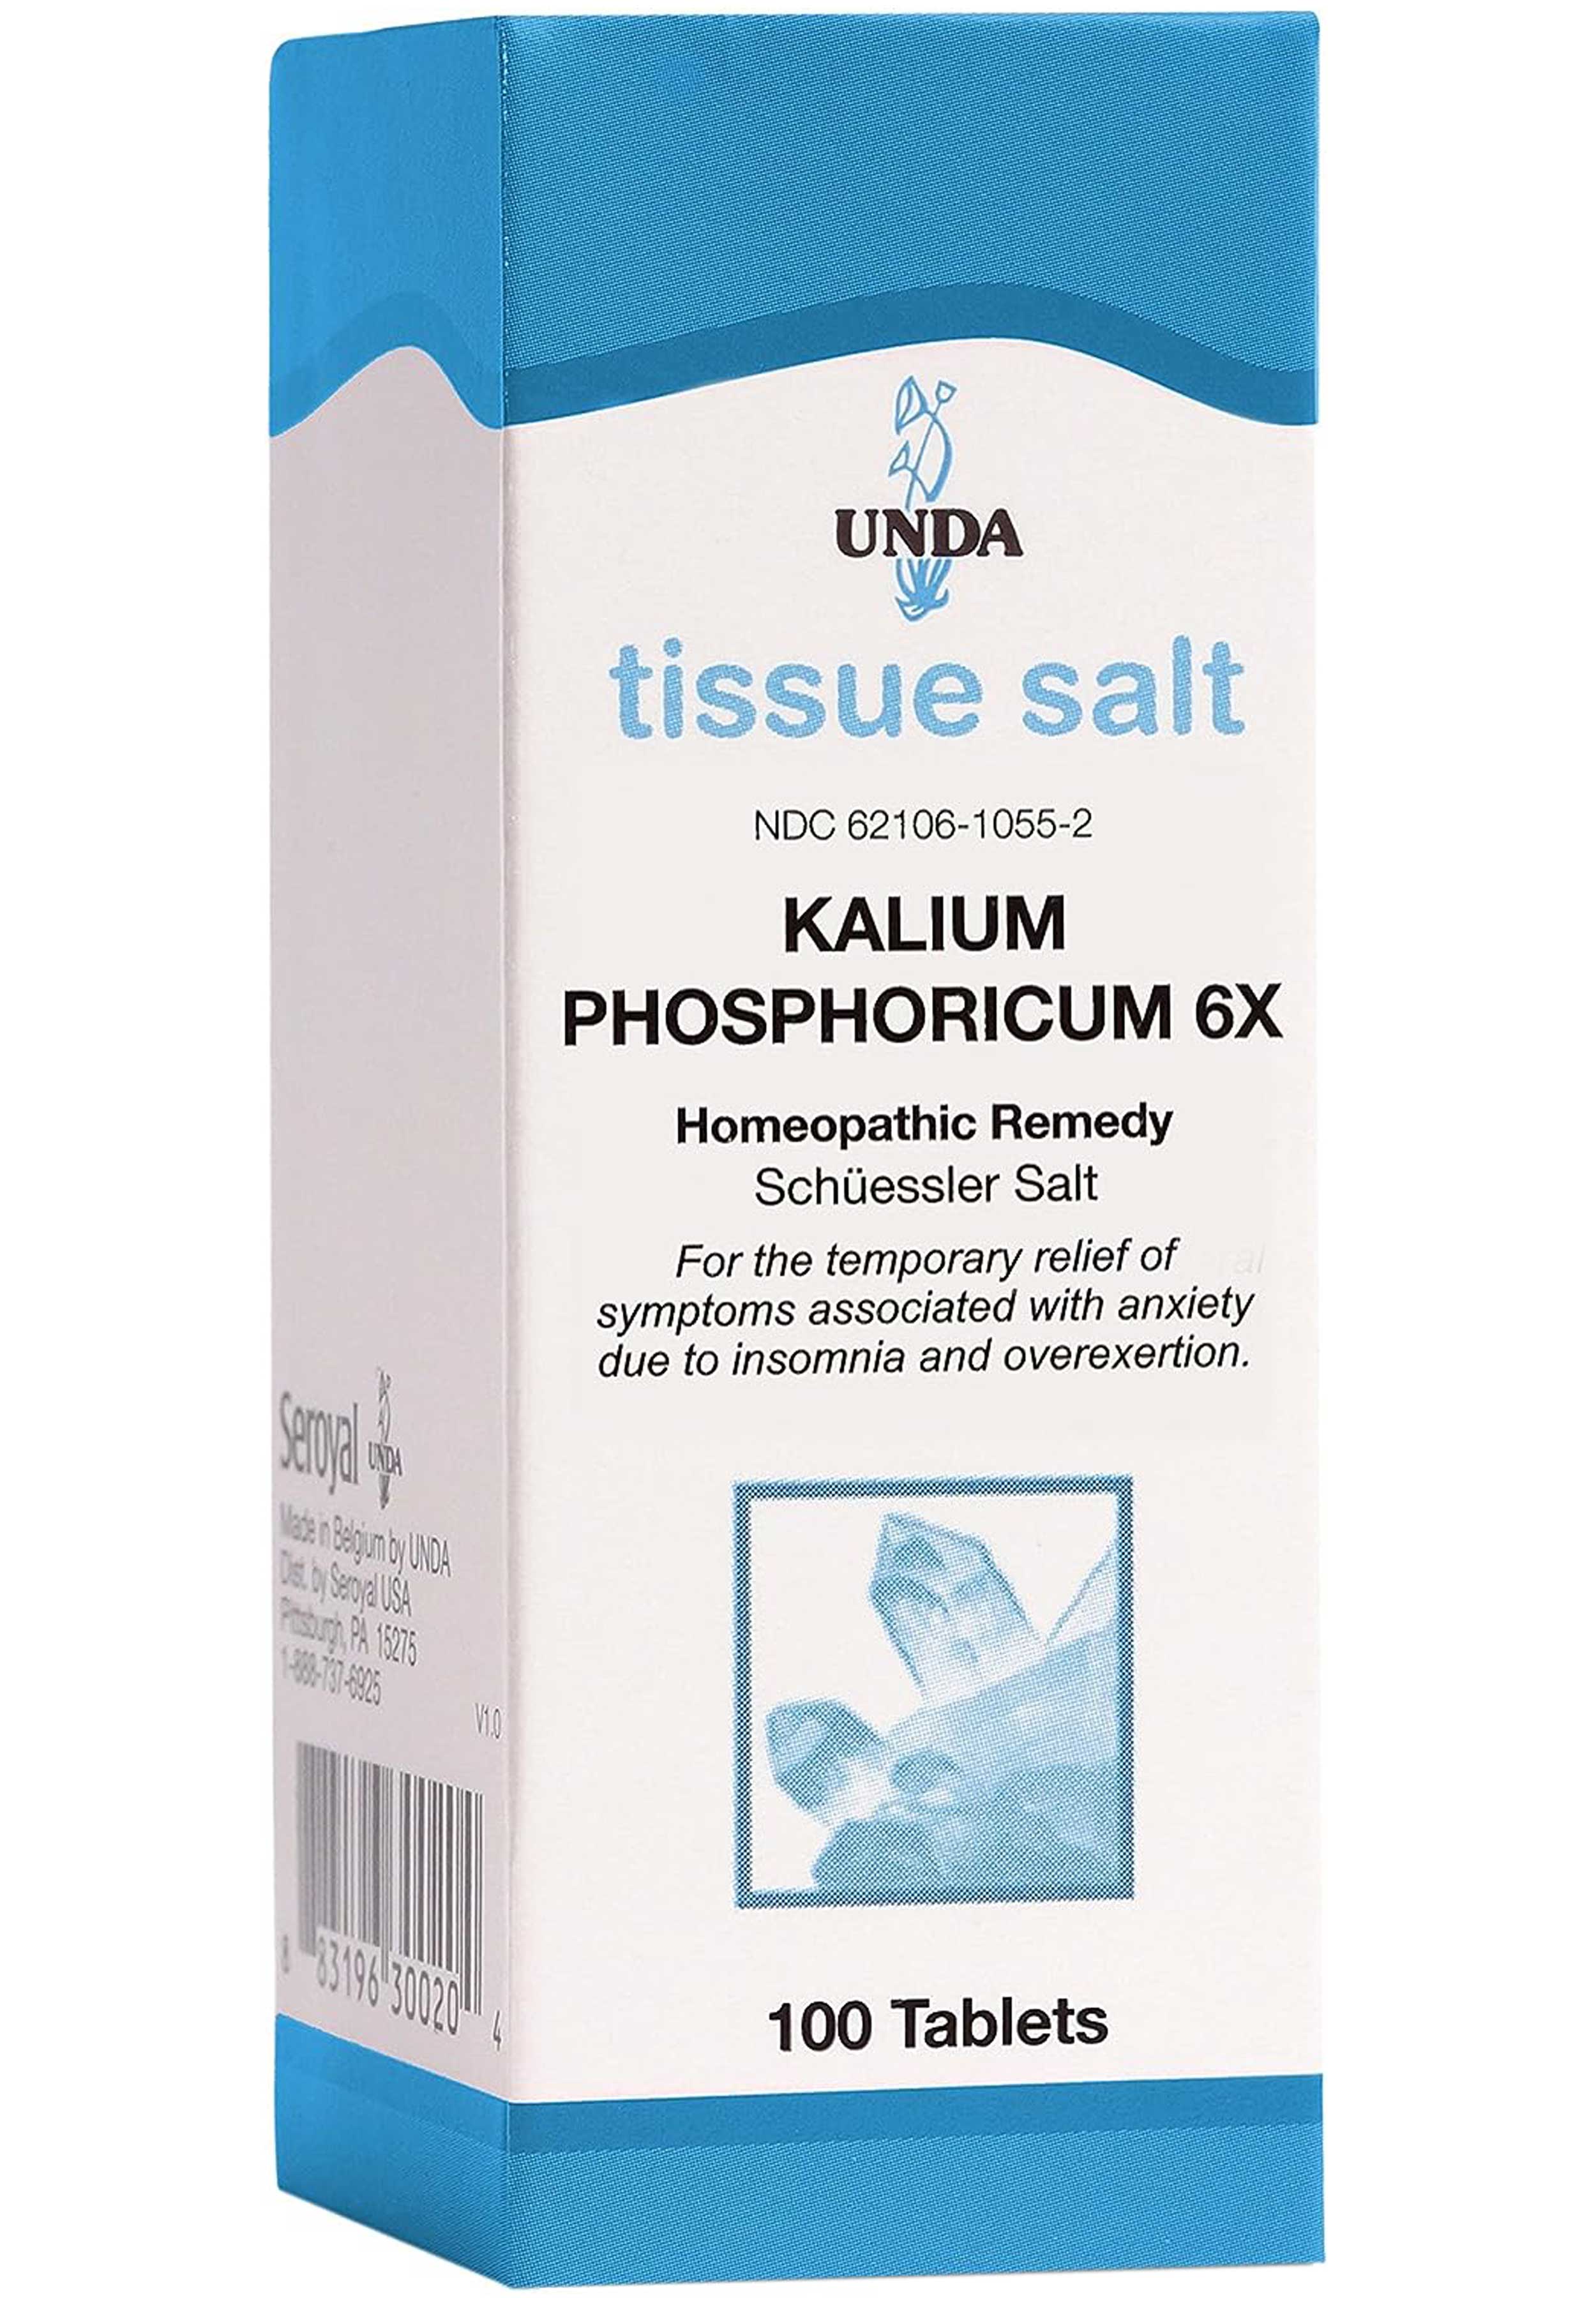 UNDA Kalium Phosphoricum 6X